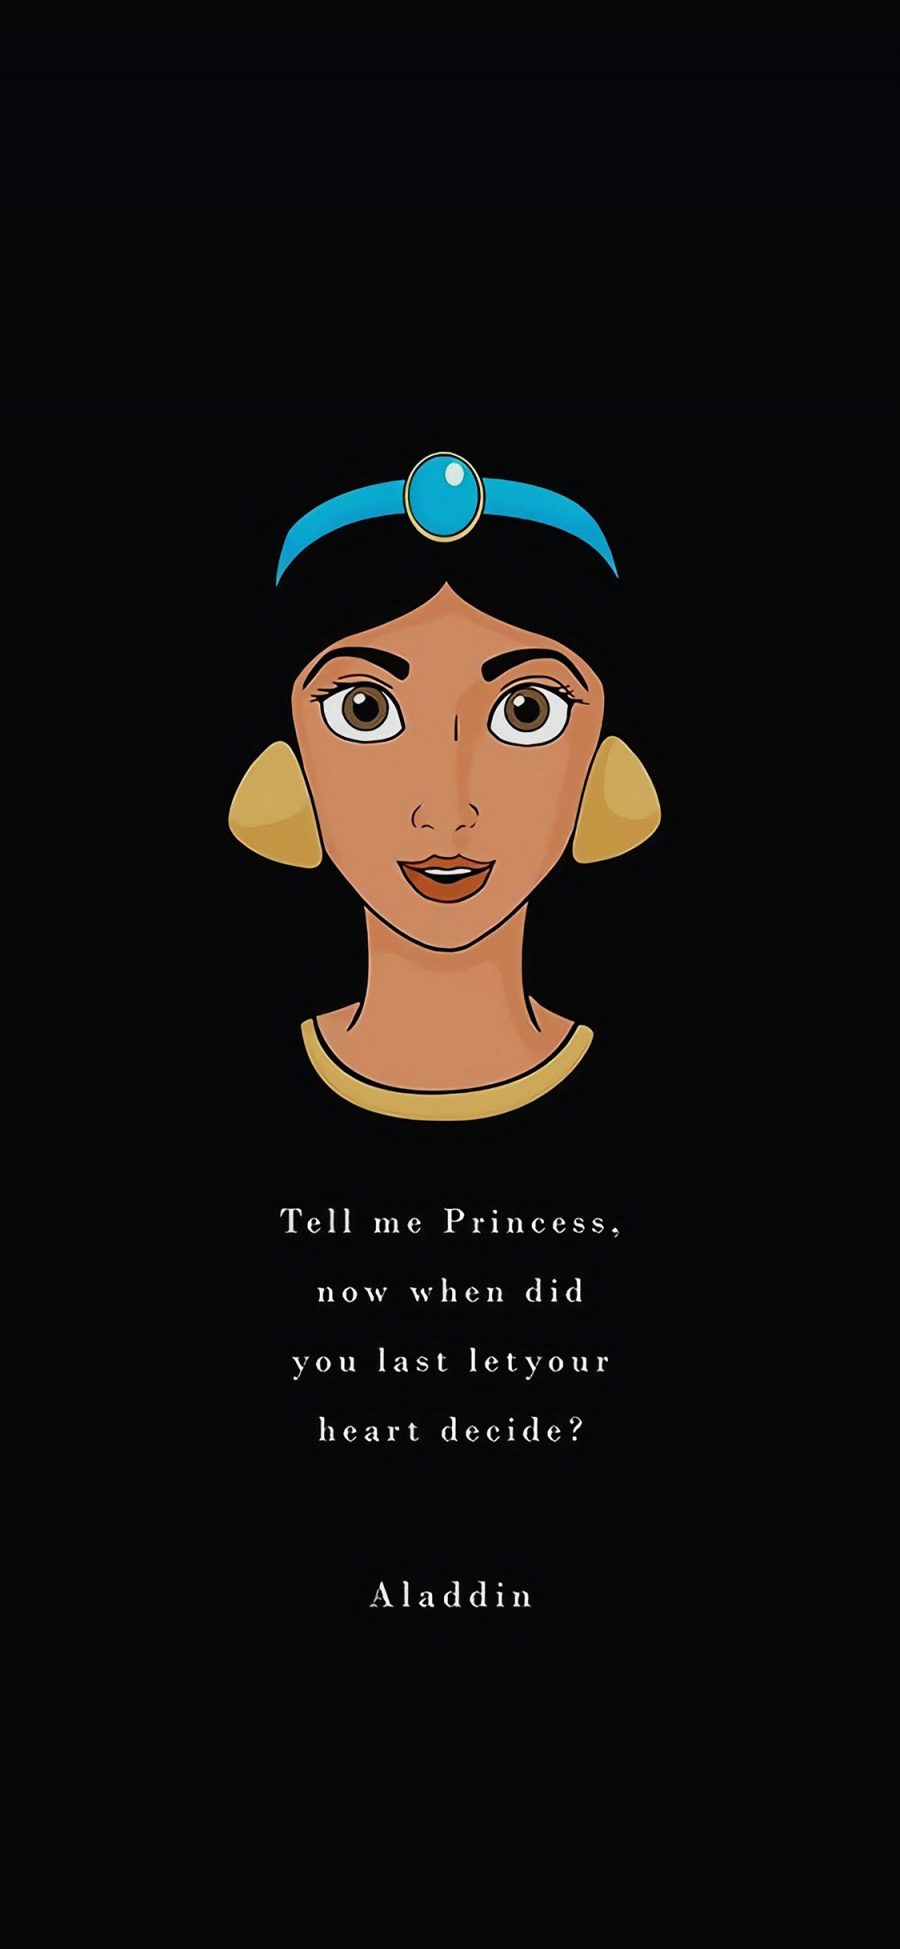 [2436×1125]迪士尼 动画 阿拉丁神灯 公主 Aladdin 苹果手机动漫壁纸图片